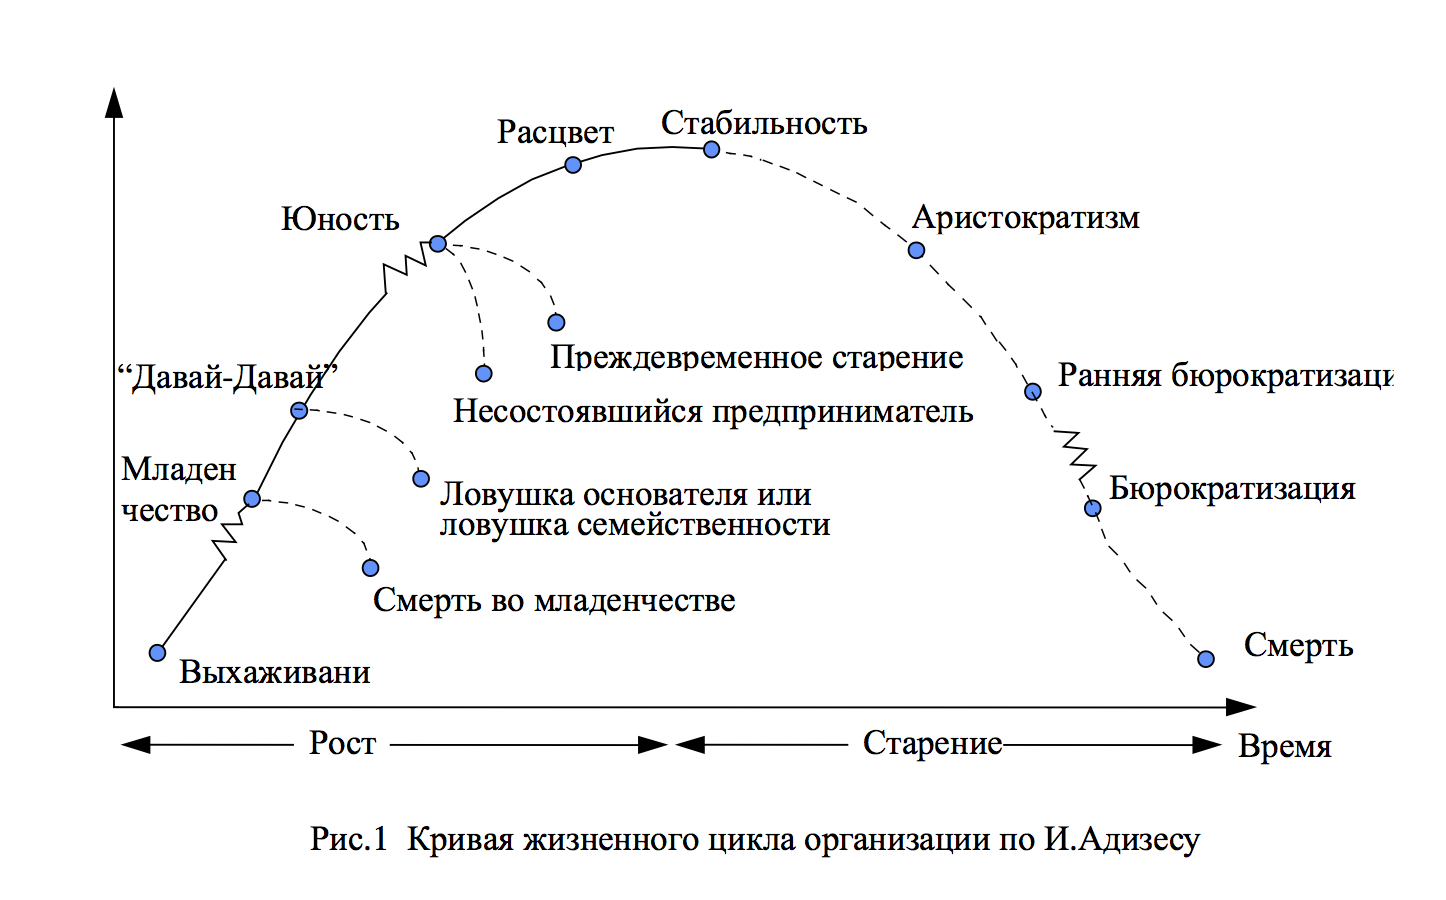 Стабильного регулярного. Адизес модель жизненного цикла организации. Жизненный цикл Грейнера и Адизеса. Теория жизненных циклов организации и.Адизеса. Фазы жизненного цикла компании.